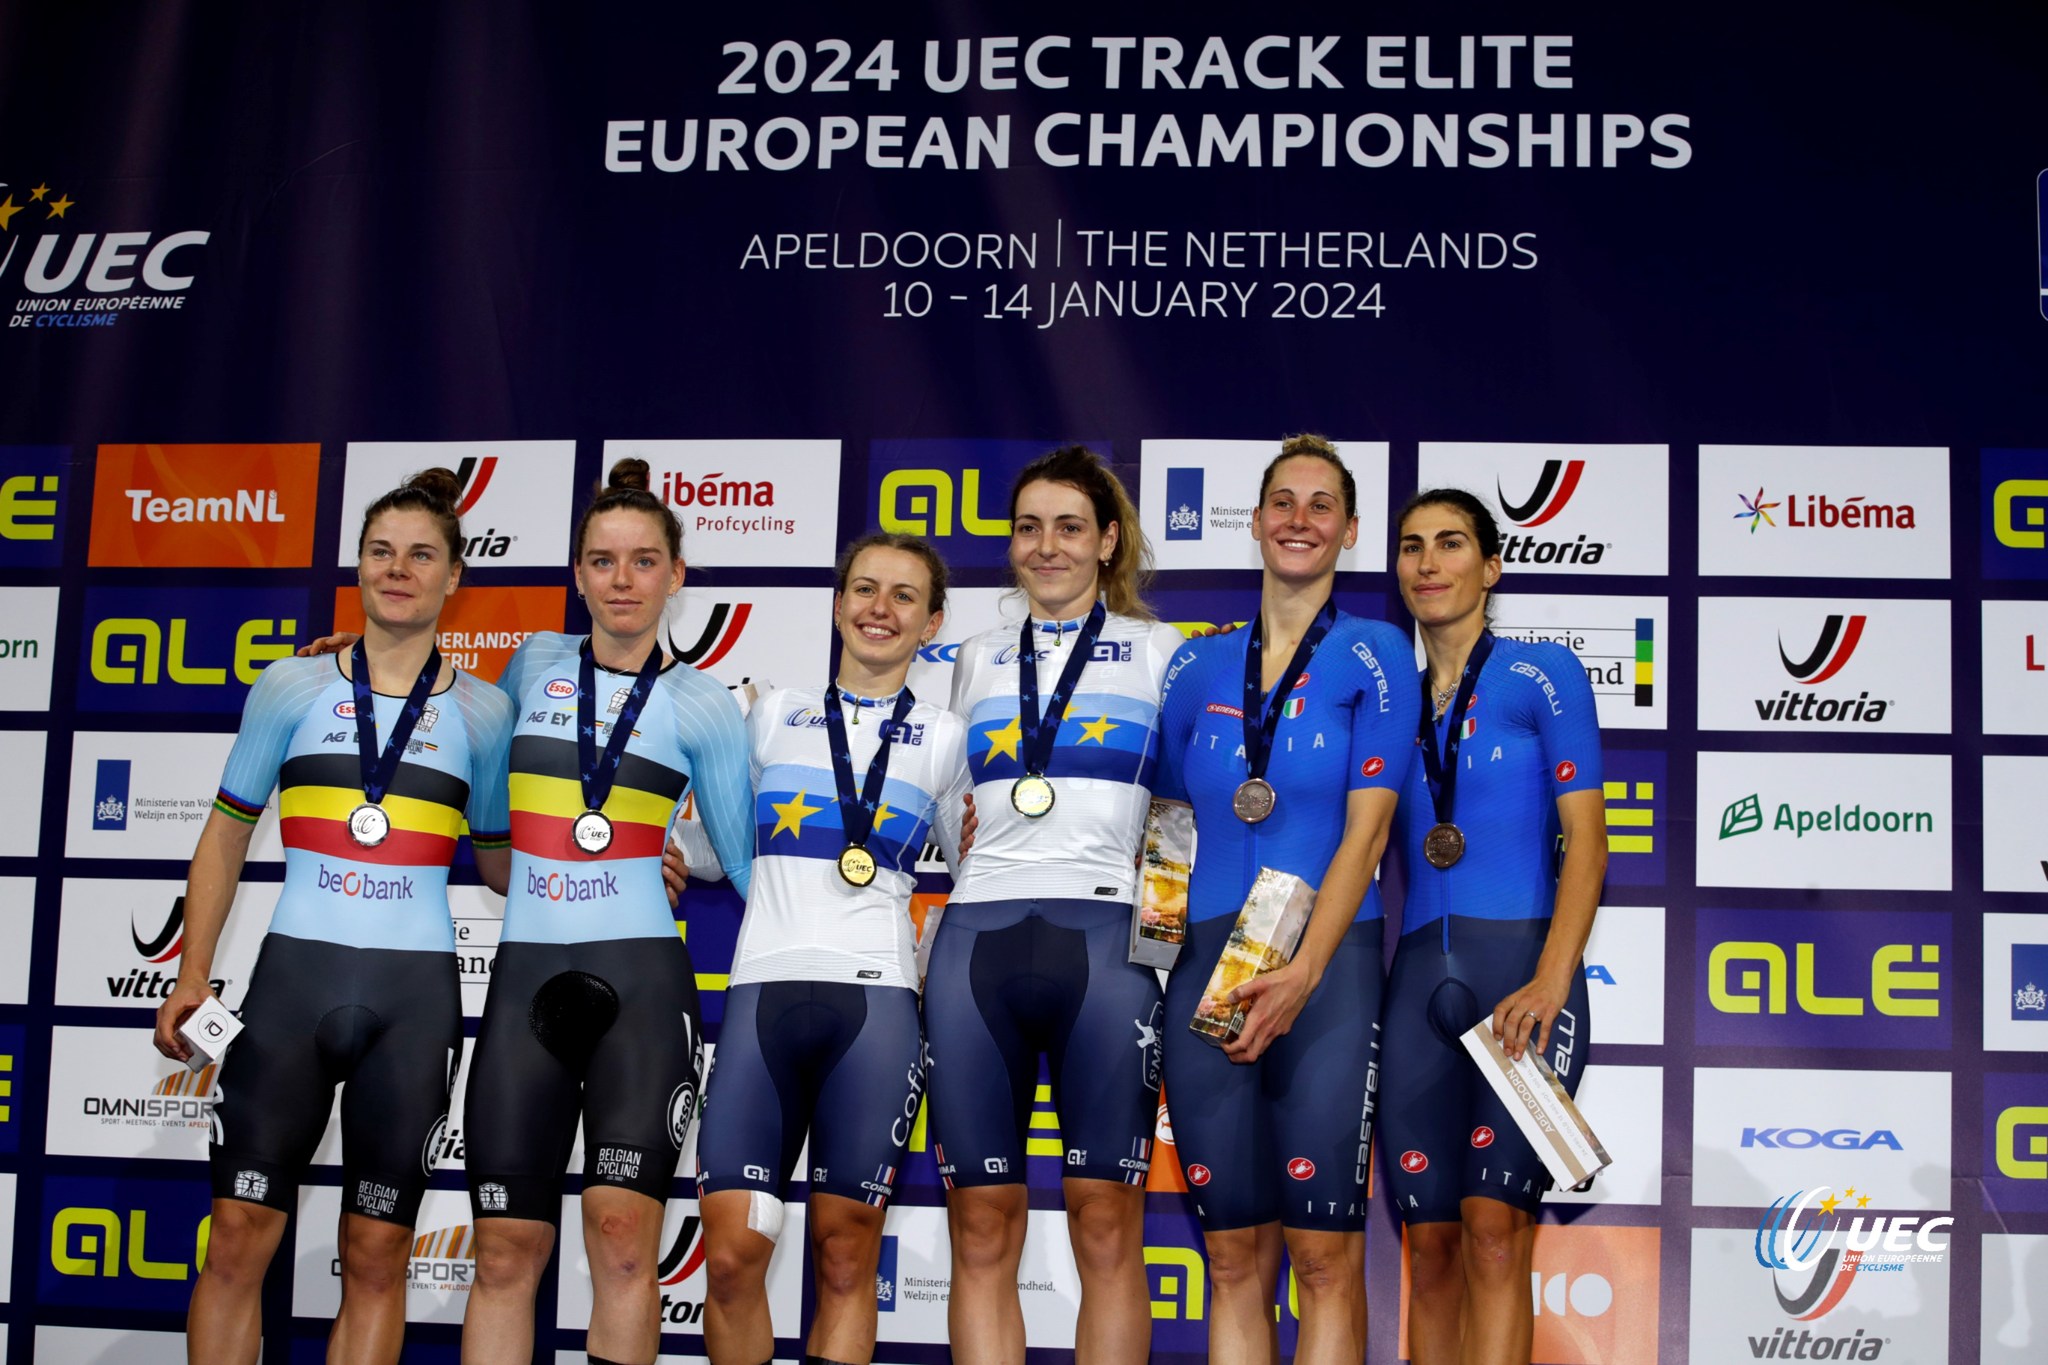 Француженки выиграла мэдисон на чемпионате Европы по трековому велоспорту